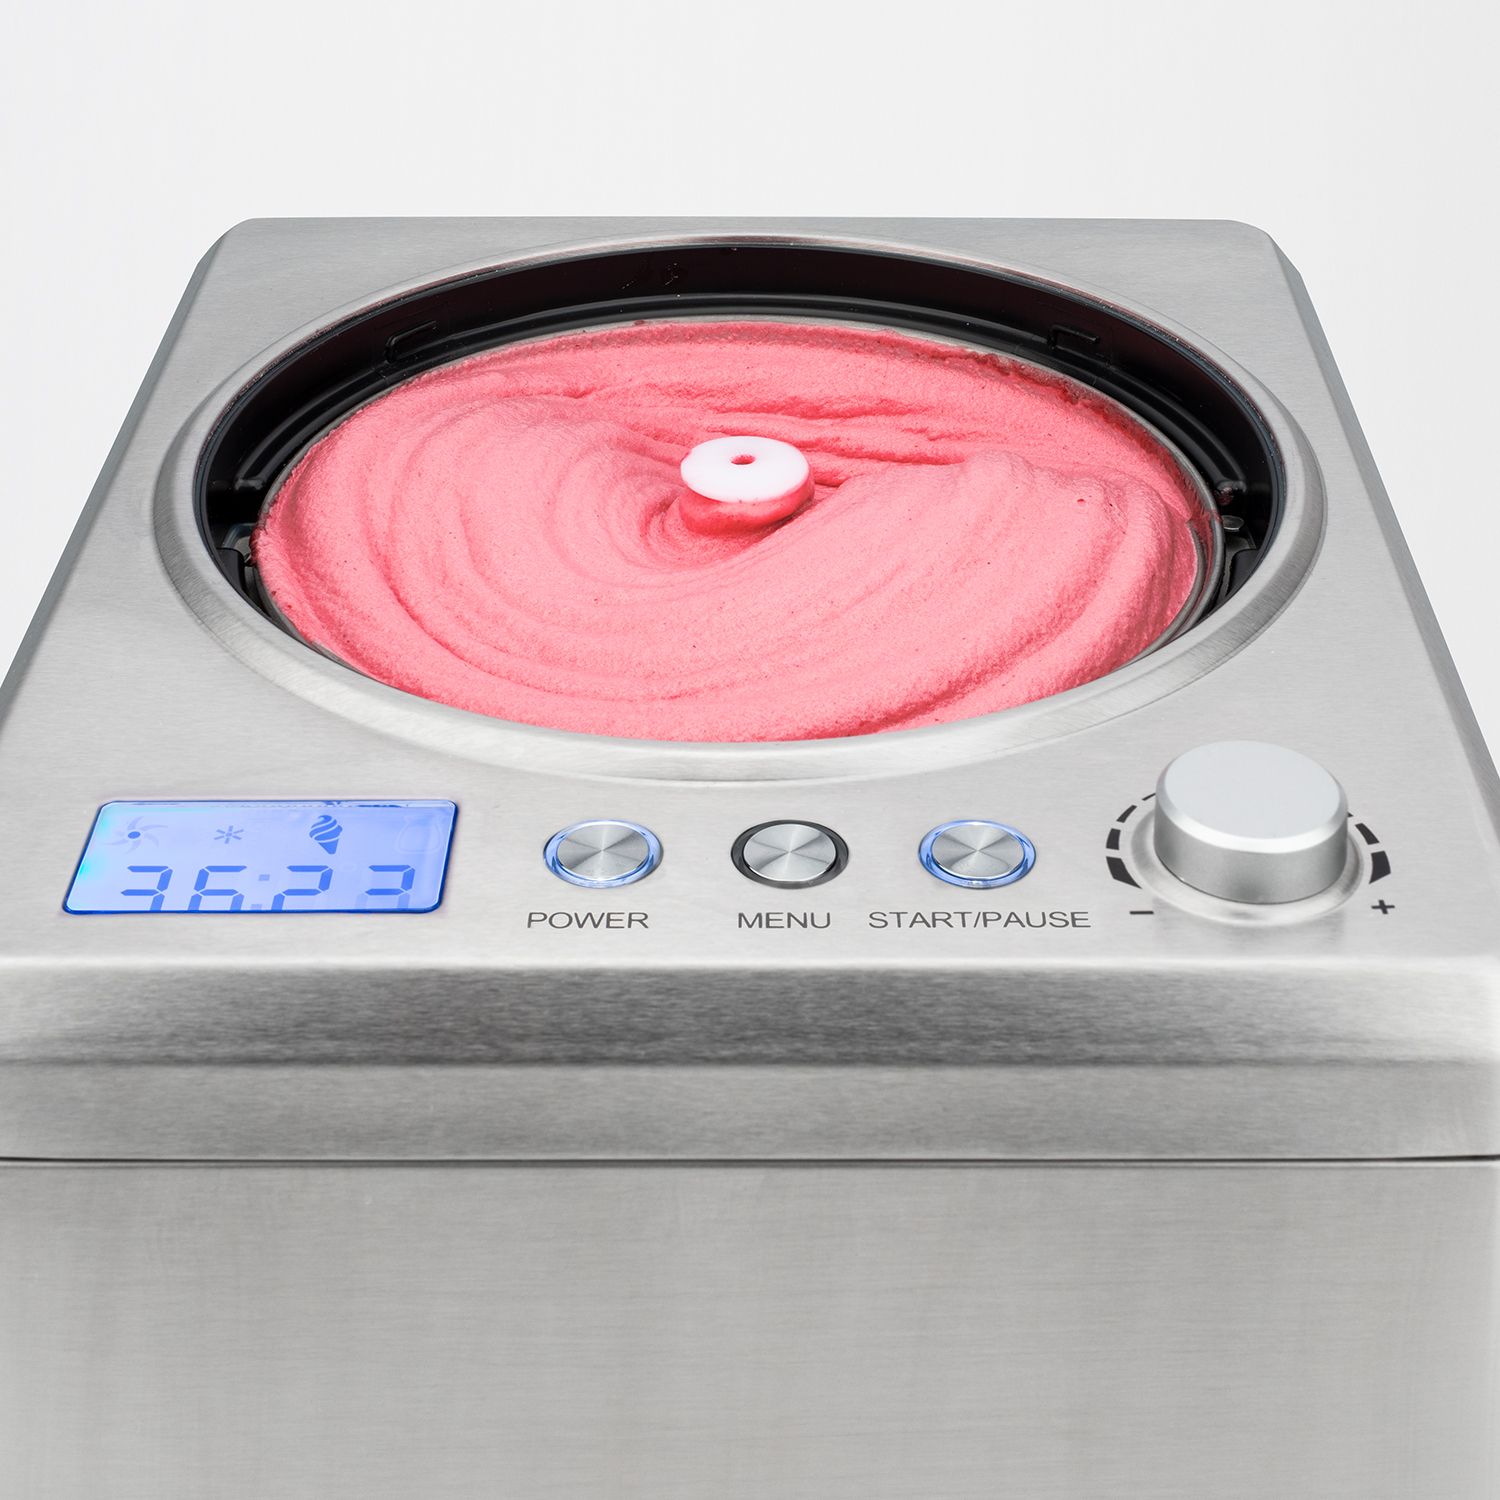 Kühlfunktion H.KOENIG professionelle Eiscrememaschine / W Joghurt, Eismaschine Eis, Frozen 2 H.Koenig / / L / (180 Watt, 180 HF340 Silber) Sorbet